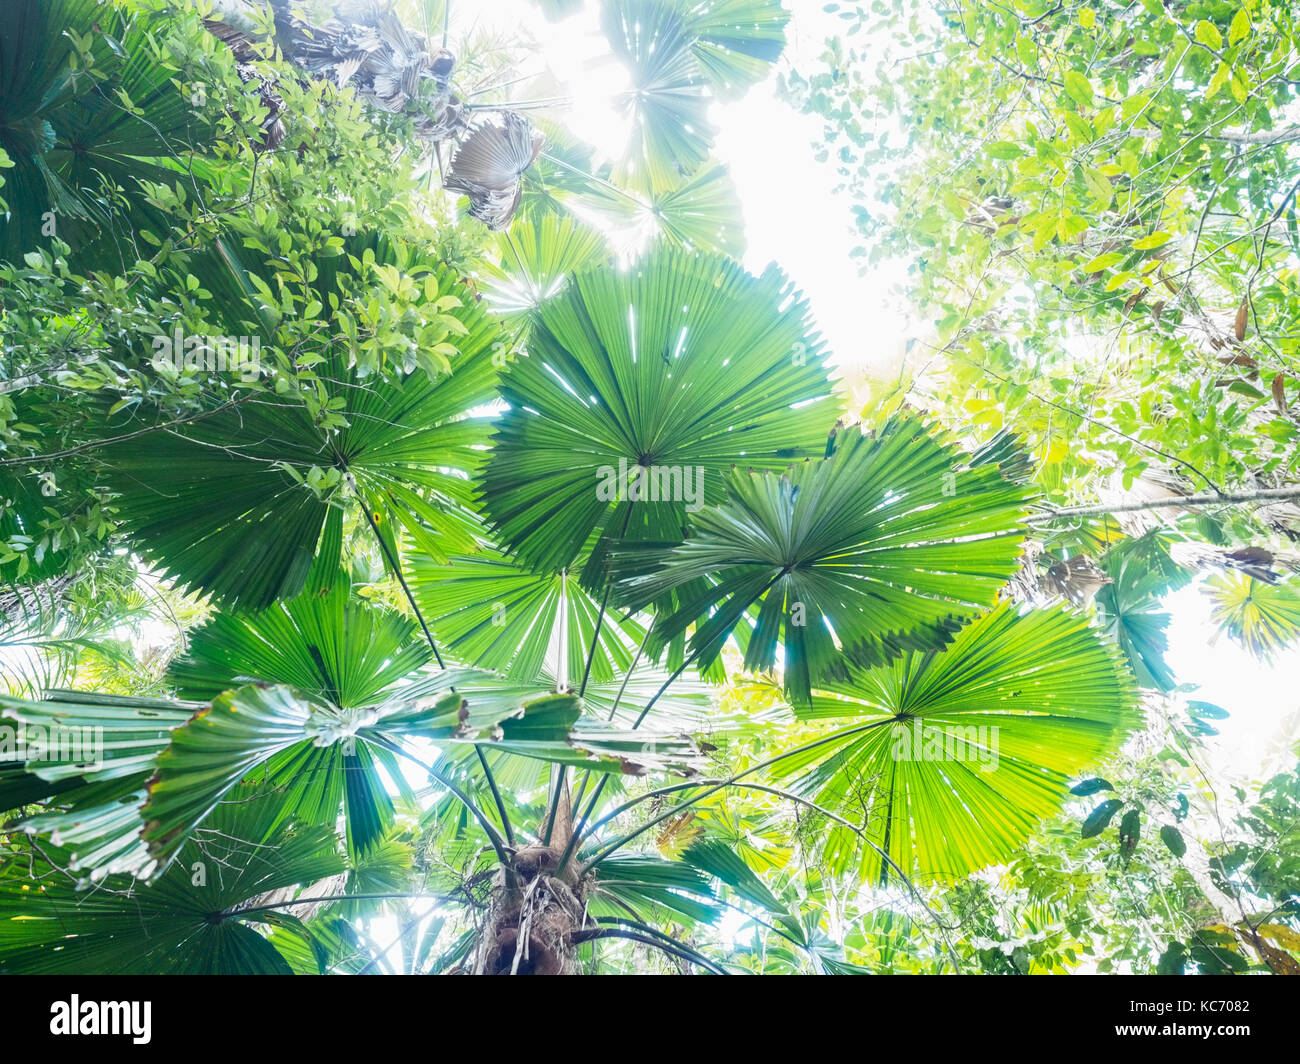 Lush foliage of Licuala grandis (Fan palm) Stock Photo